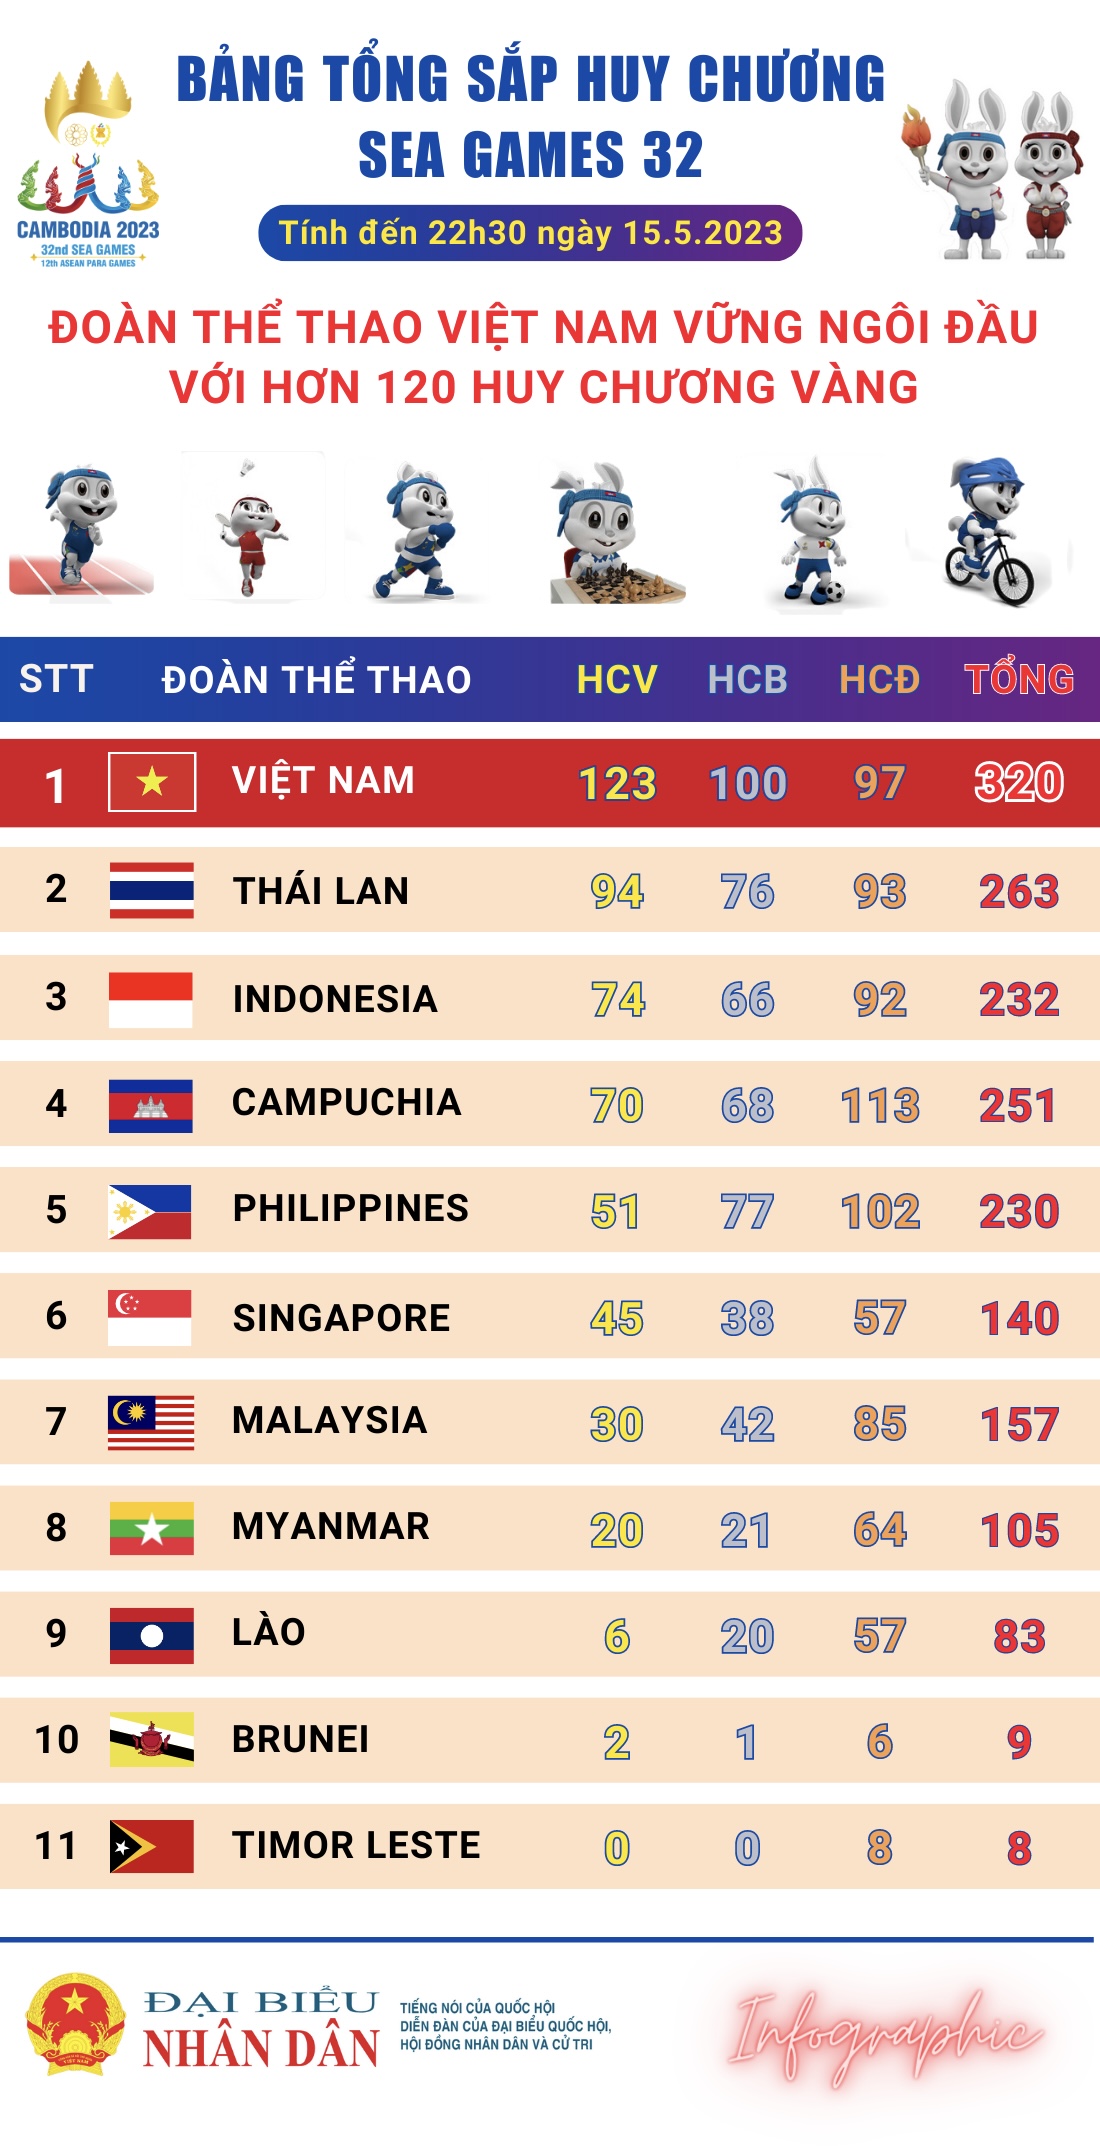 Việt Nam đứng vững ngôi đầu với hơn 300 huy chương -0